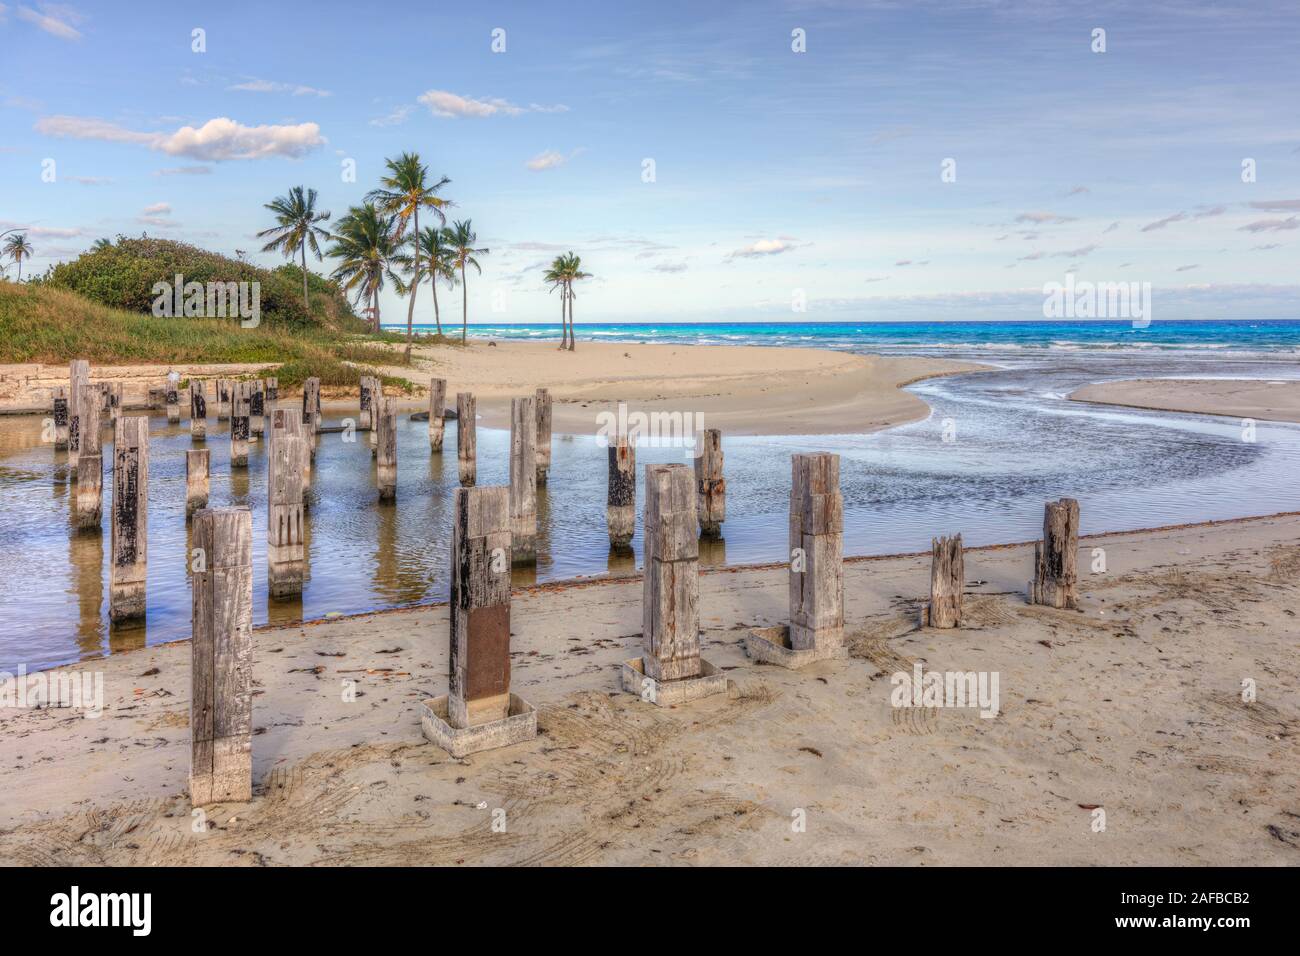 Playa Boca Ciega, Playas del Este, Havana, Cuba, North America Stock Photo